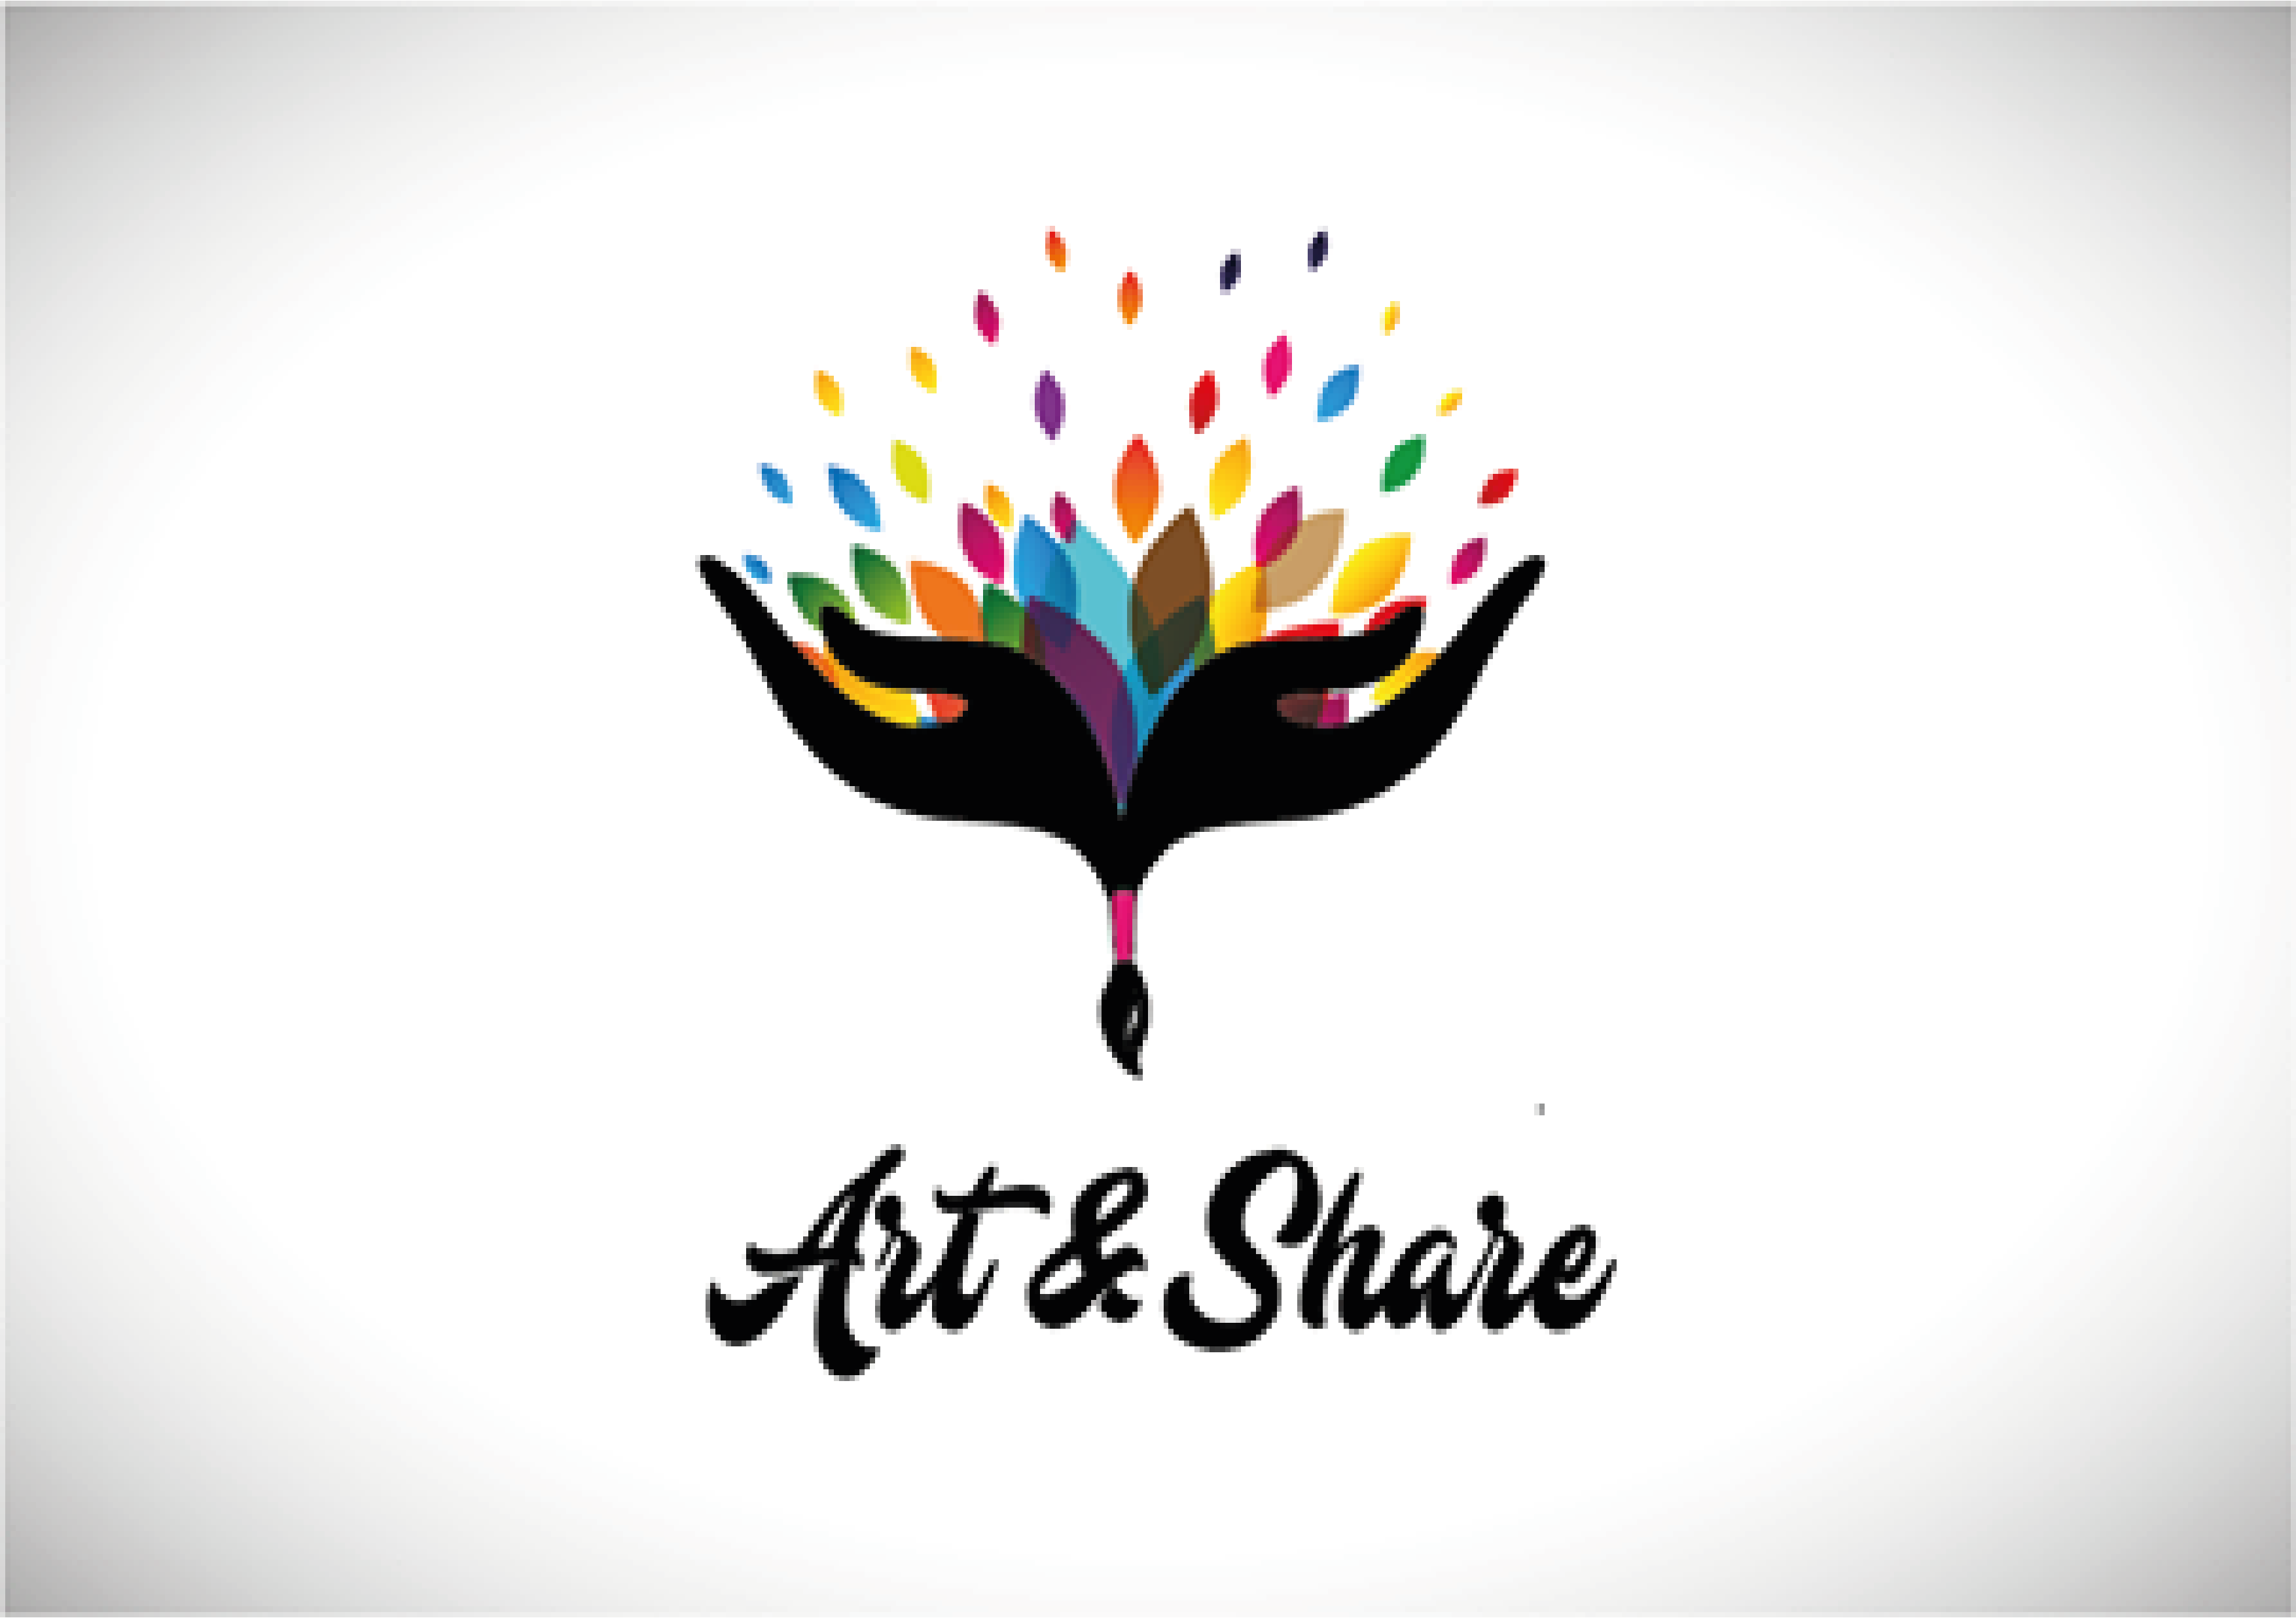 Art & share 